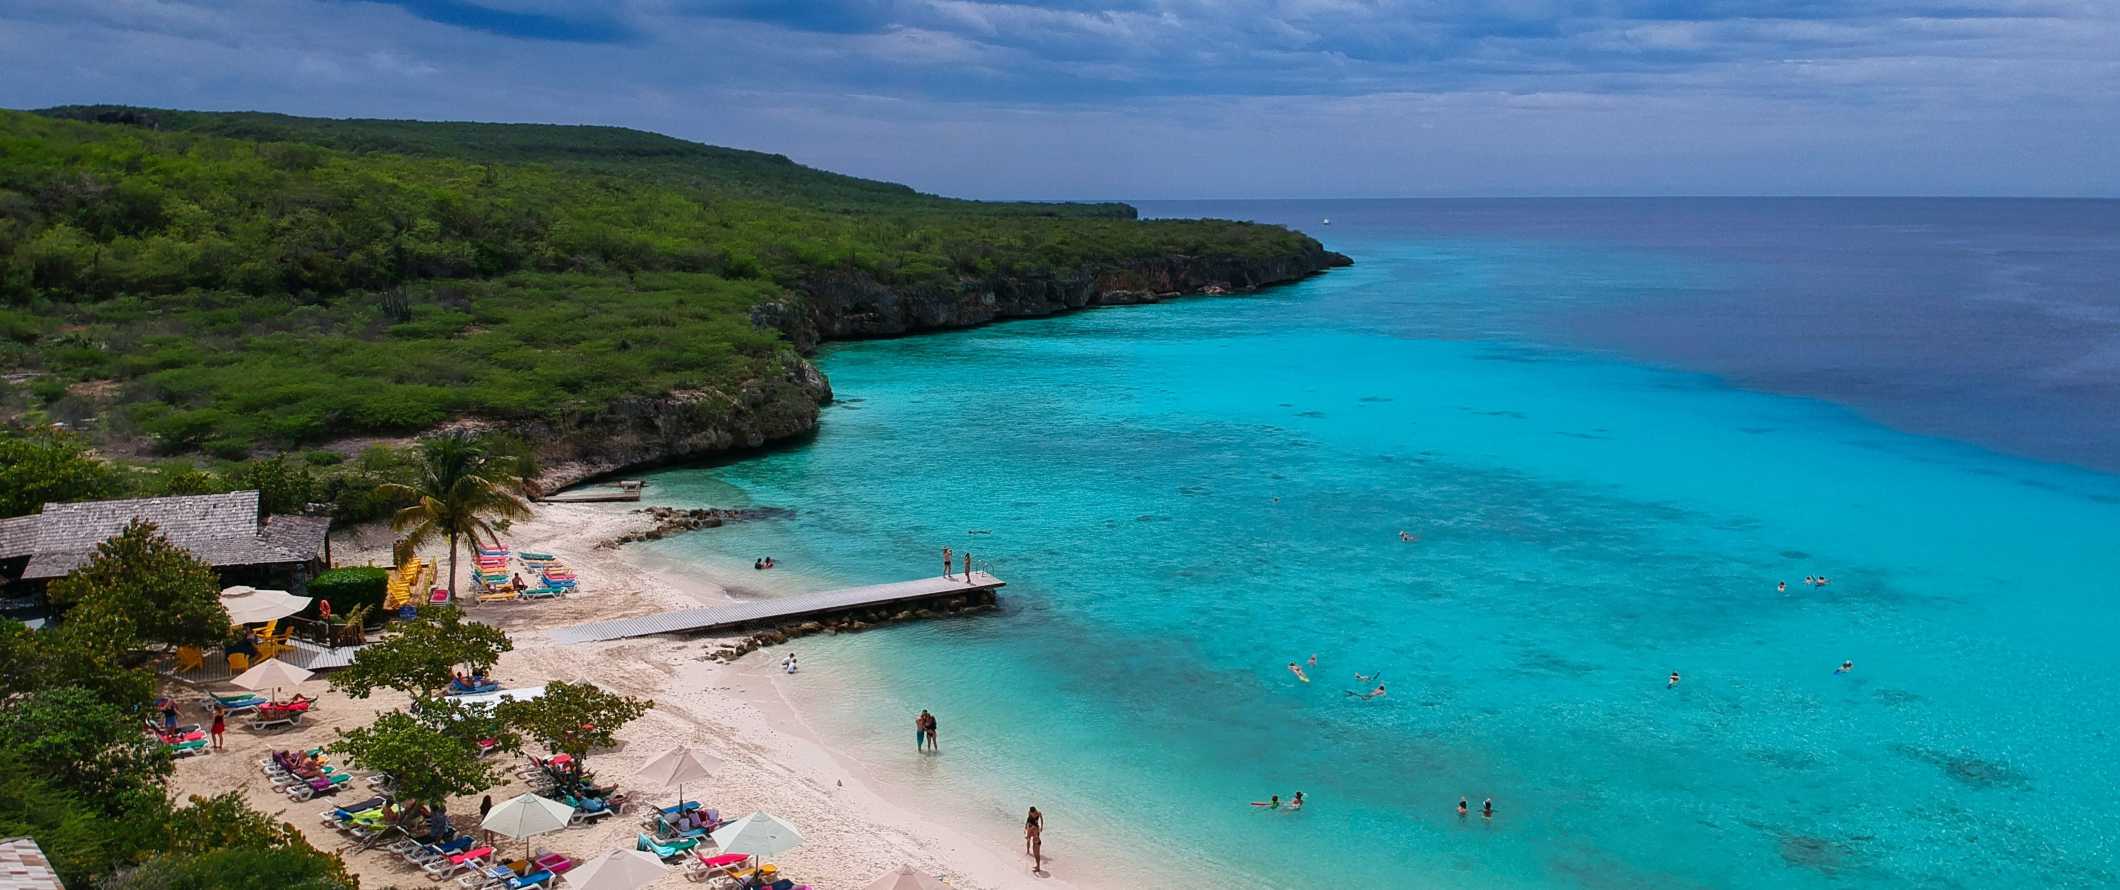 Vista de drone da praia na ilha tropical de Curaçao, no Mar do Caribe